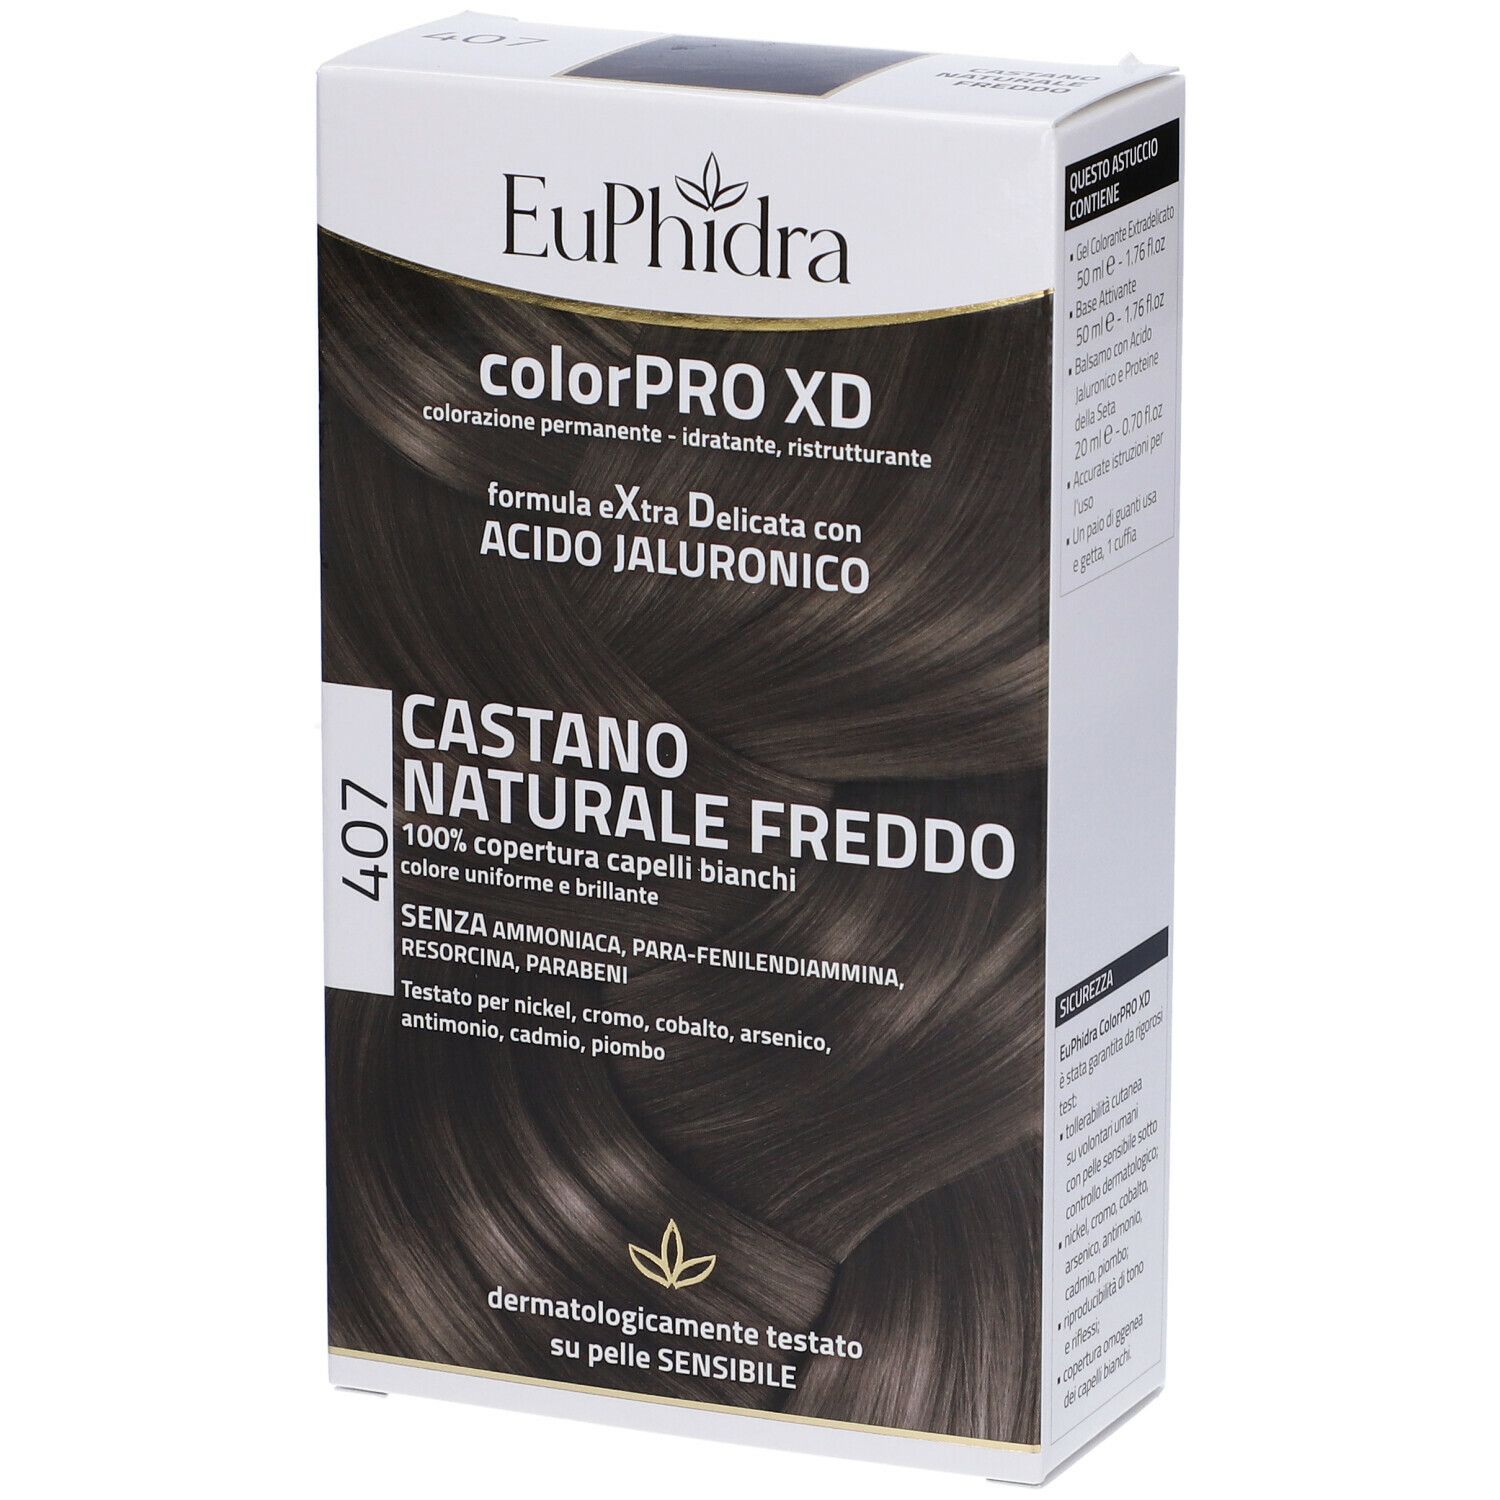 Euphidra ColorPRO XD Castano Naturale Freddo 407